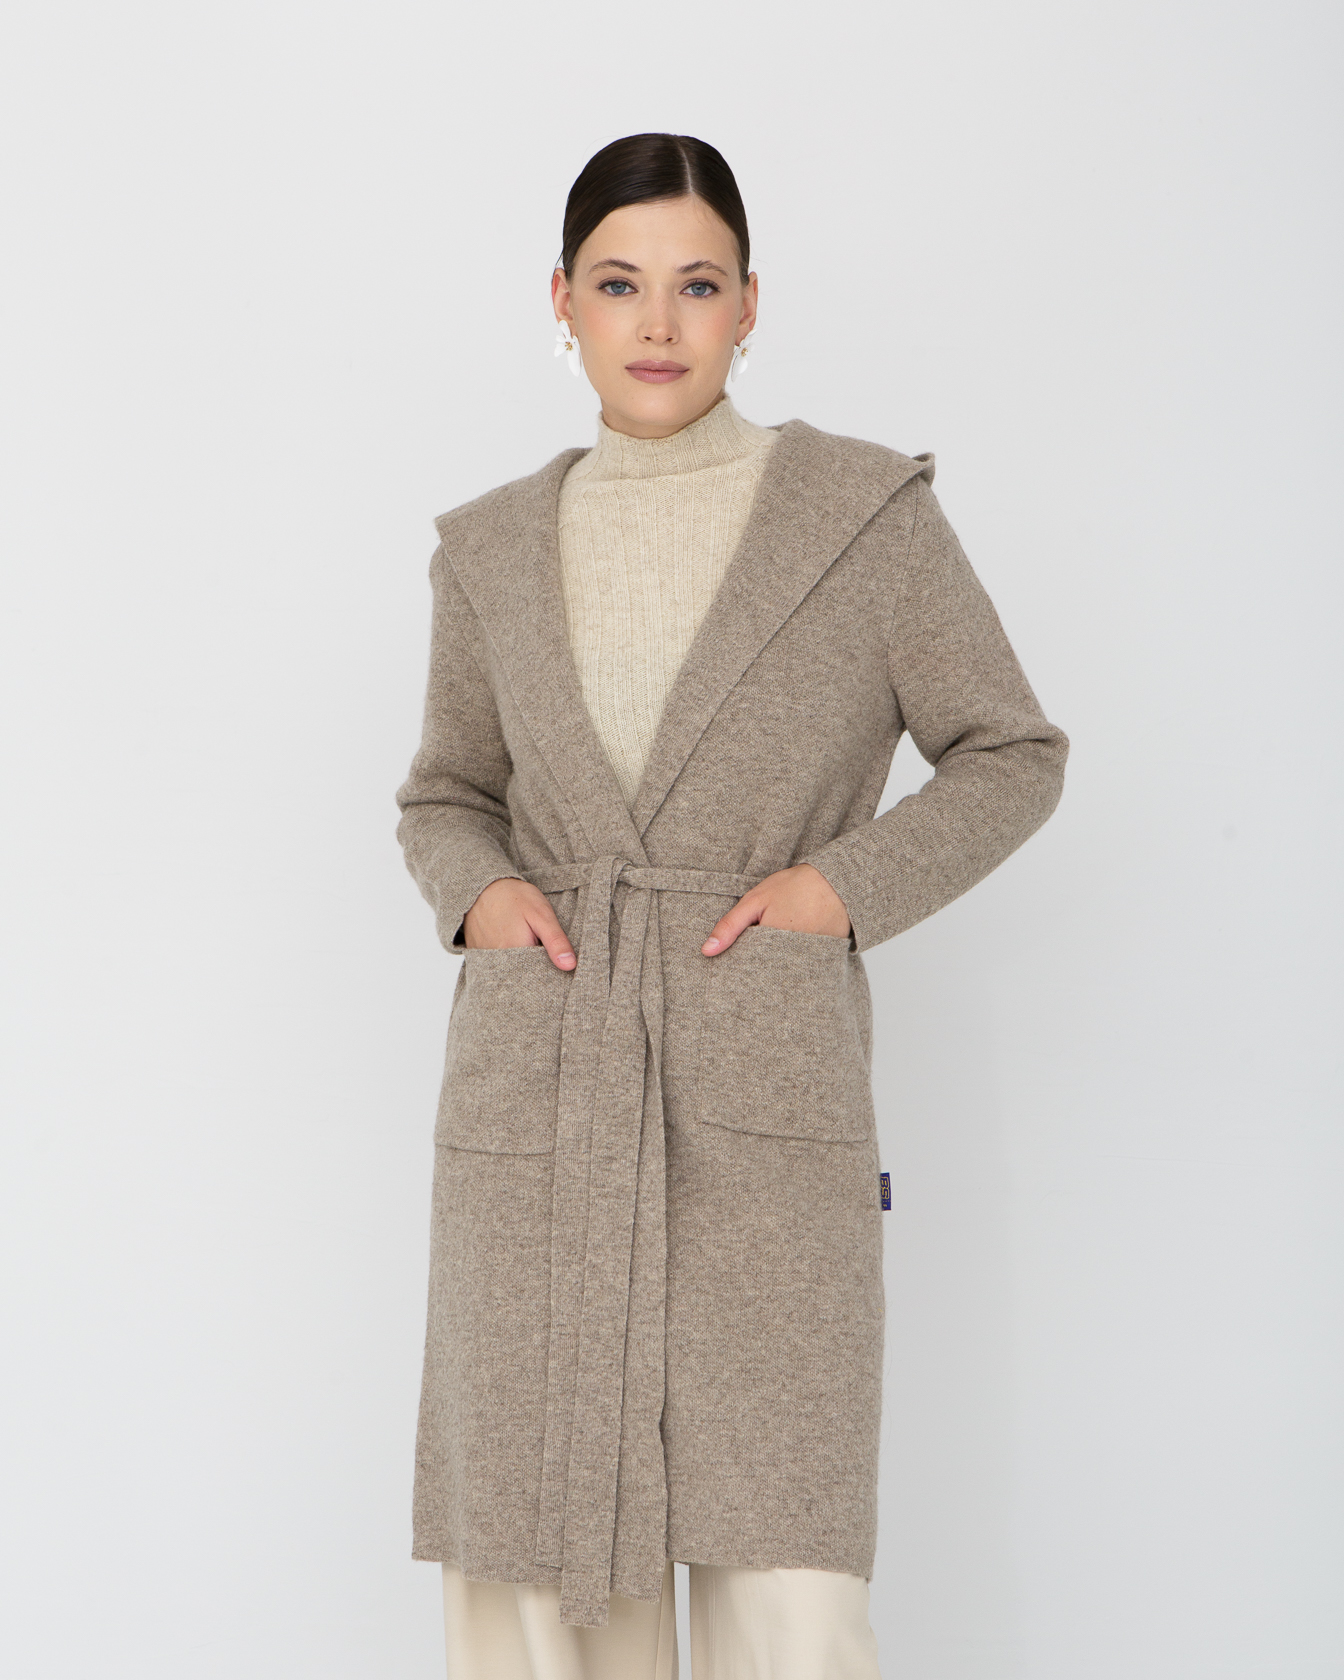 Пальто из 100% шерсти с капюшоном BS серое XXL БАТСЕЖY, цвет серый, размер XXL